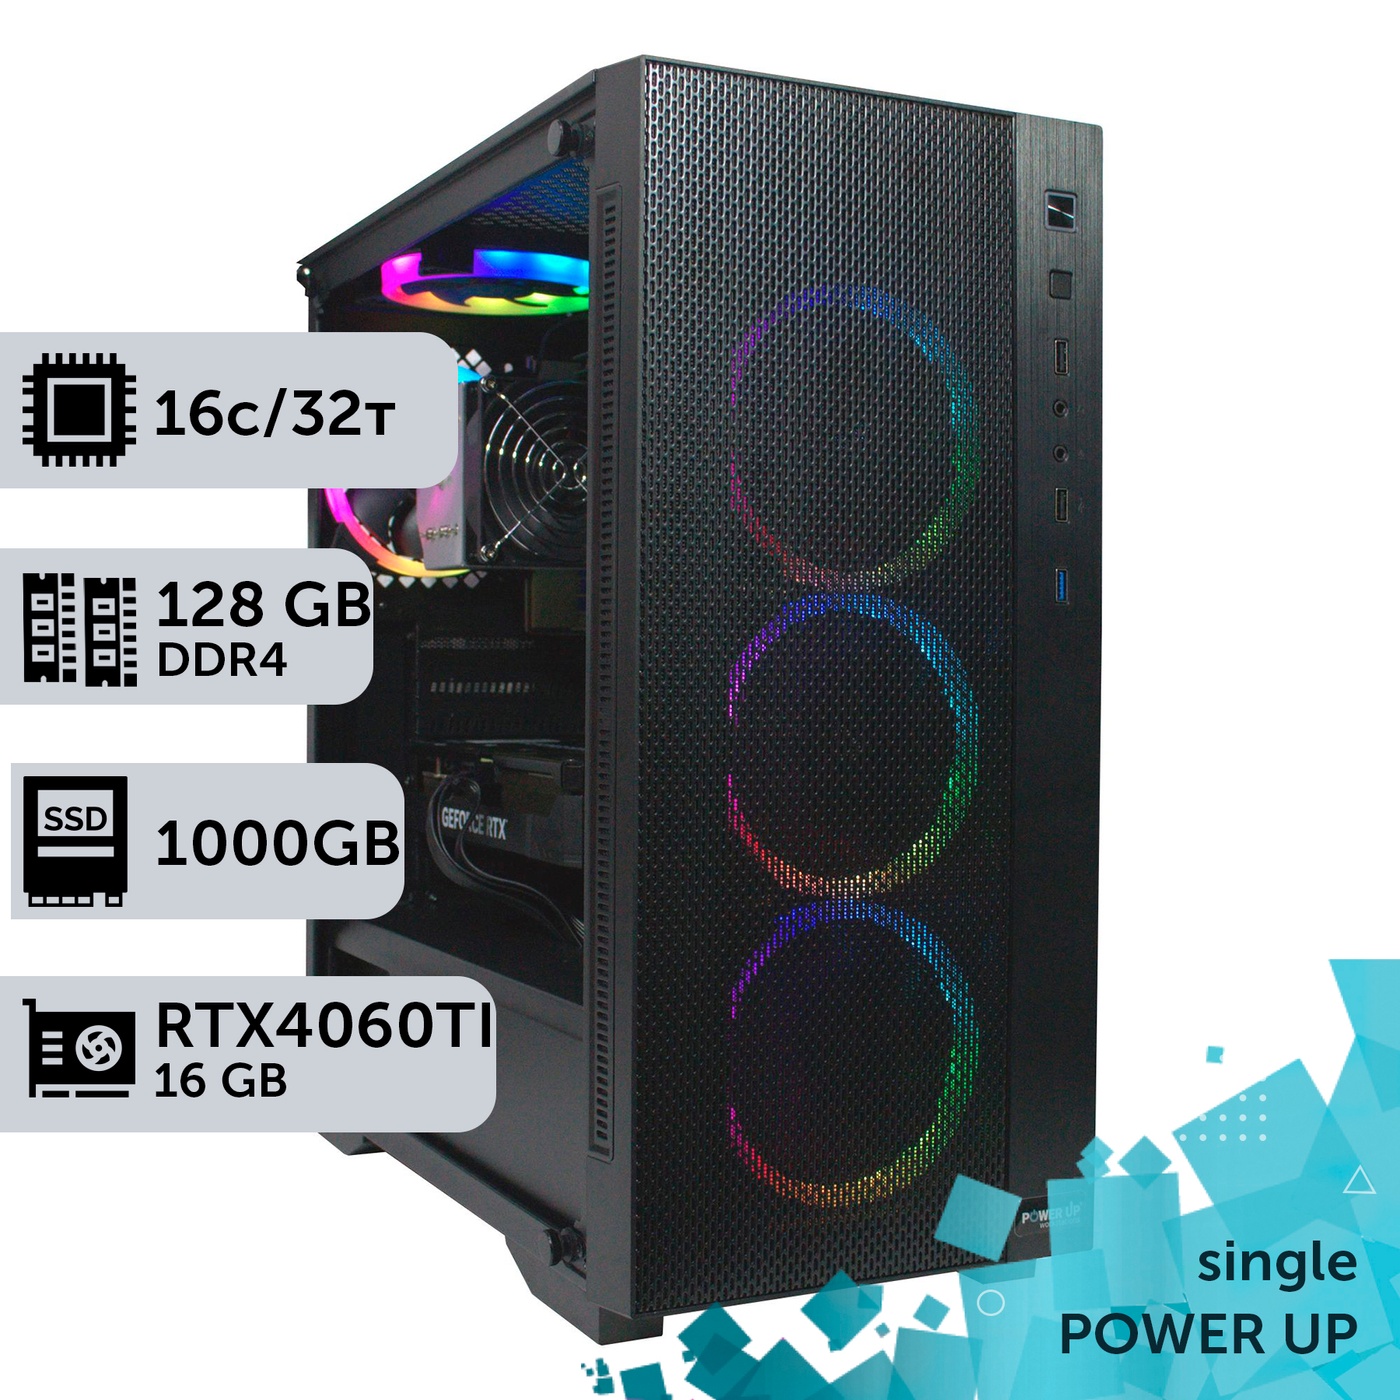 Рабочая станция PowerUp #285 AMD EPYC 7F52/128 GB/SSD 1TB/GeForce RTX 4060Ti 16GB